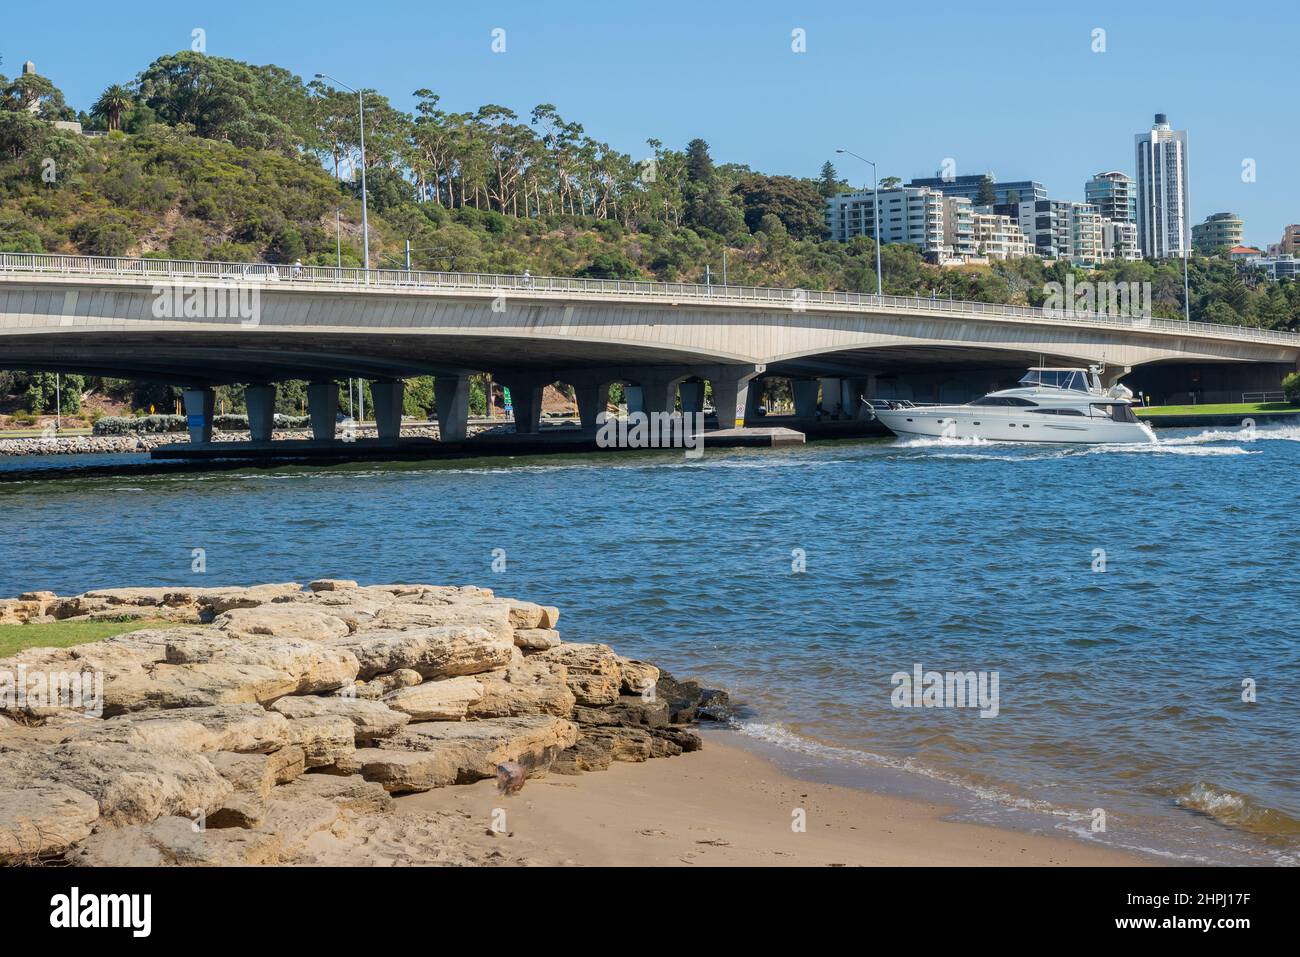 Un lancement de luxe, sur la Swan River, sur le point de passer sous le pont Narrows à Perth, en Australie occidentale. Banque D'Images